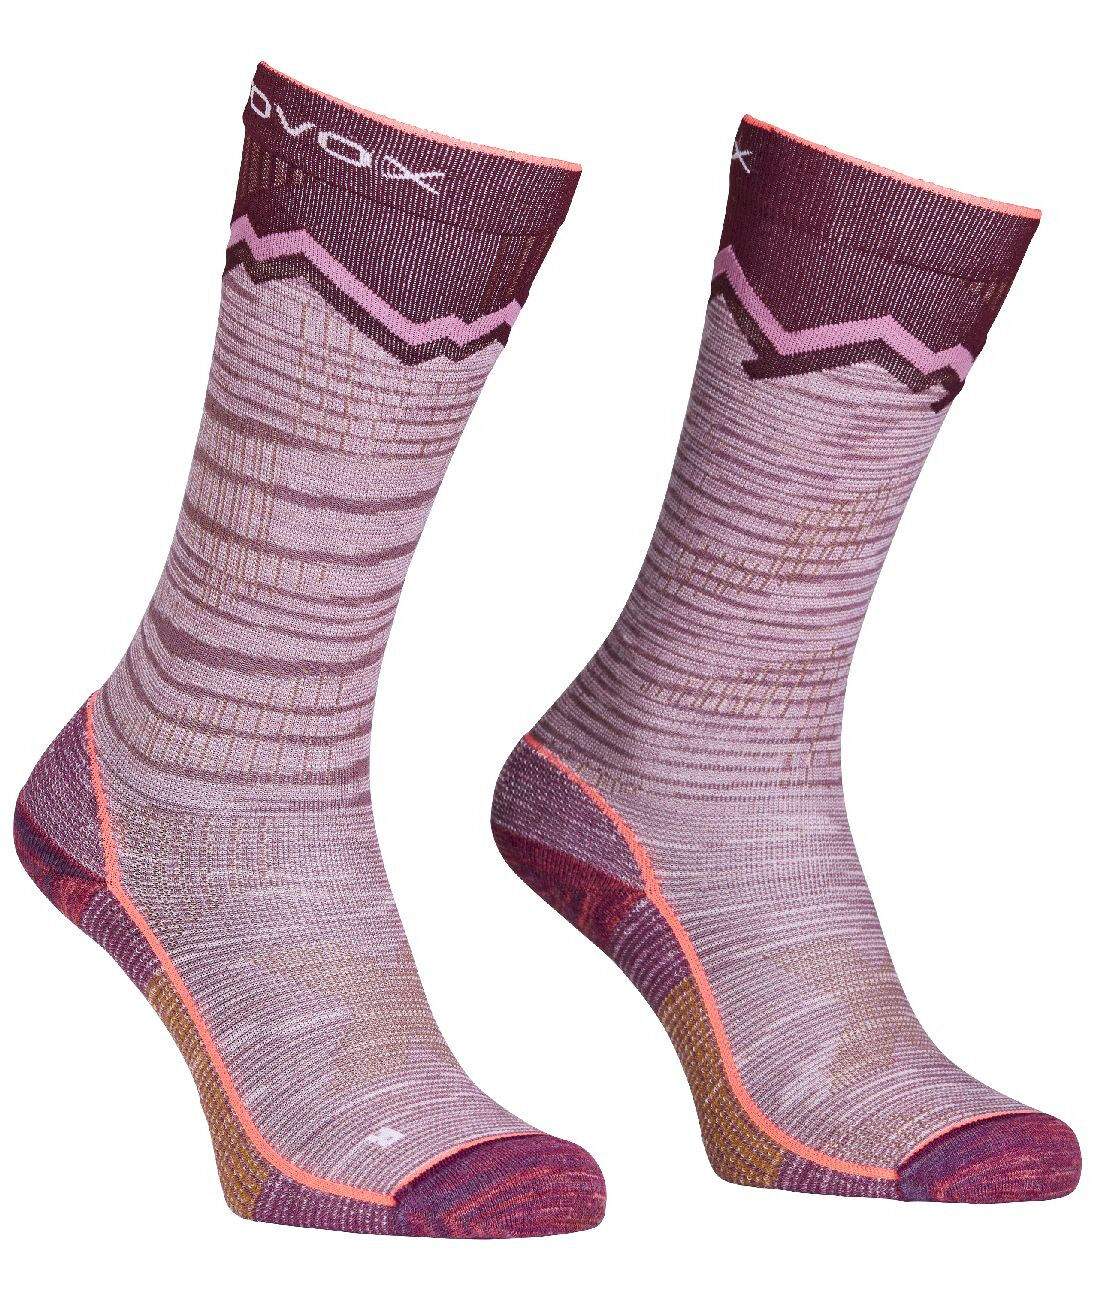 Ortovox Tour Long Socks - Skisokken - Dames